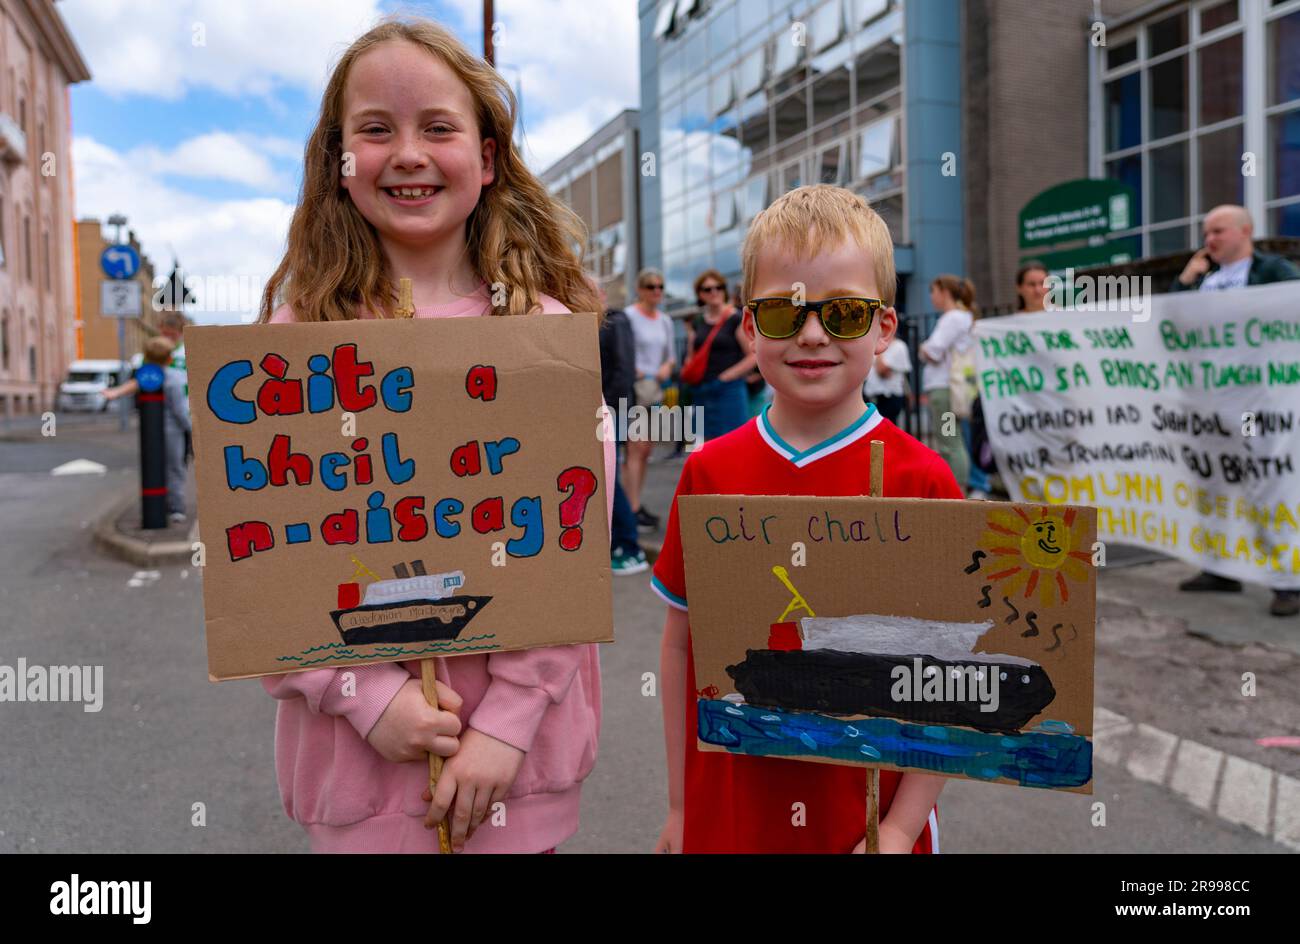 Glasgow, 24 giugno. Dimostrazione a Glasgow da parte del gruppo Gaels di Glasgow e degli isolani di South Uist che chiedevano migliori servizi di traghetto per South Uist. Foto Stock